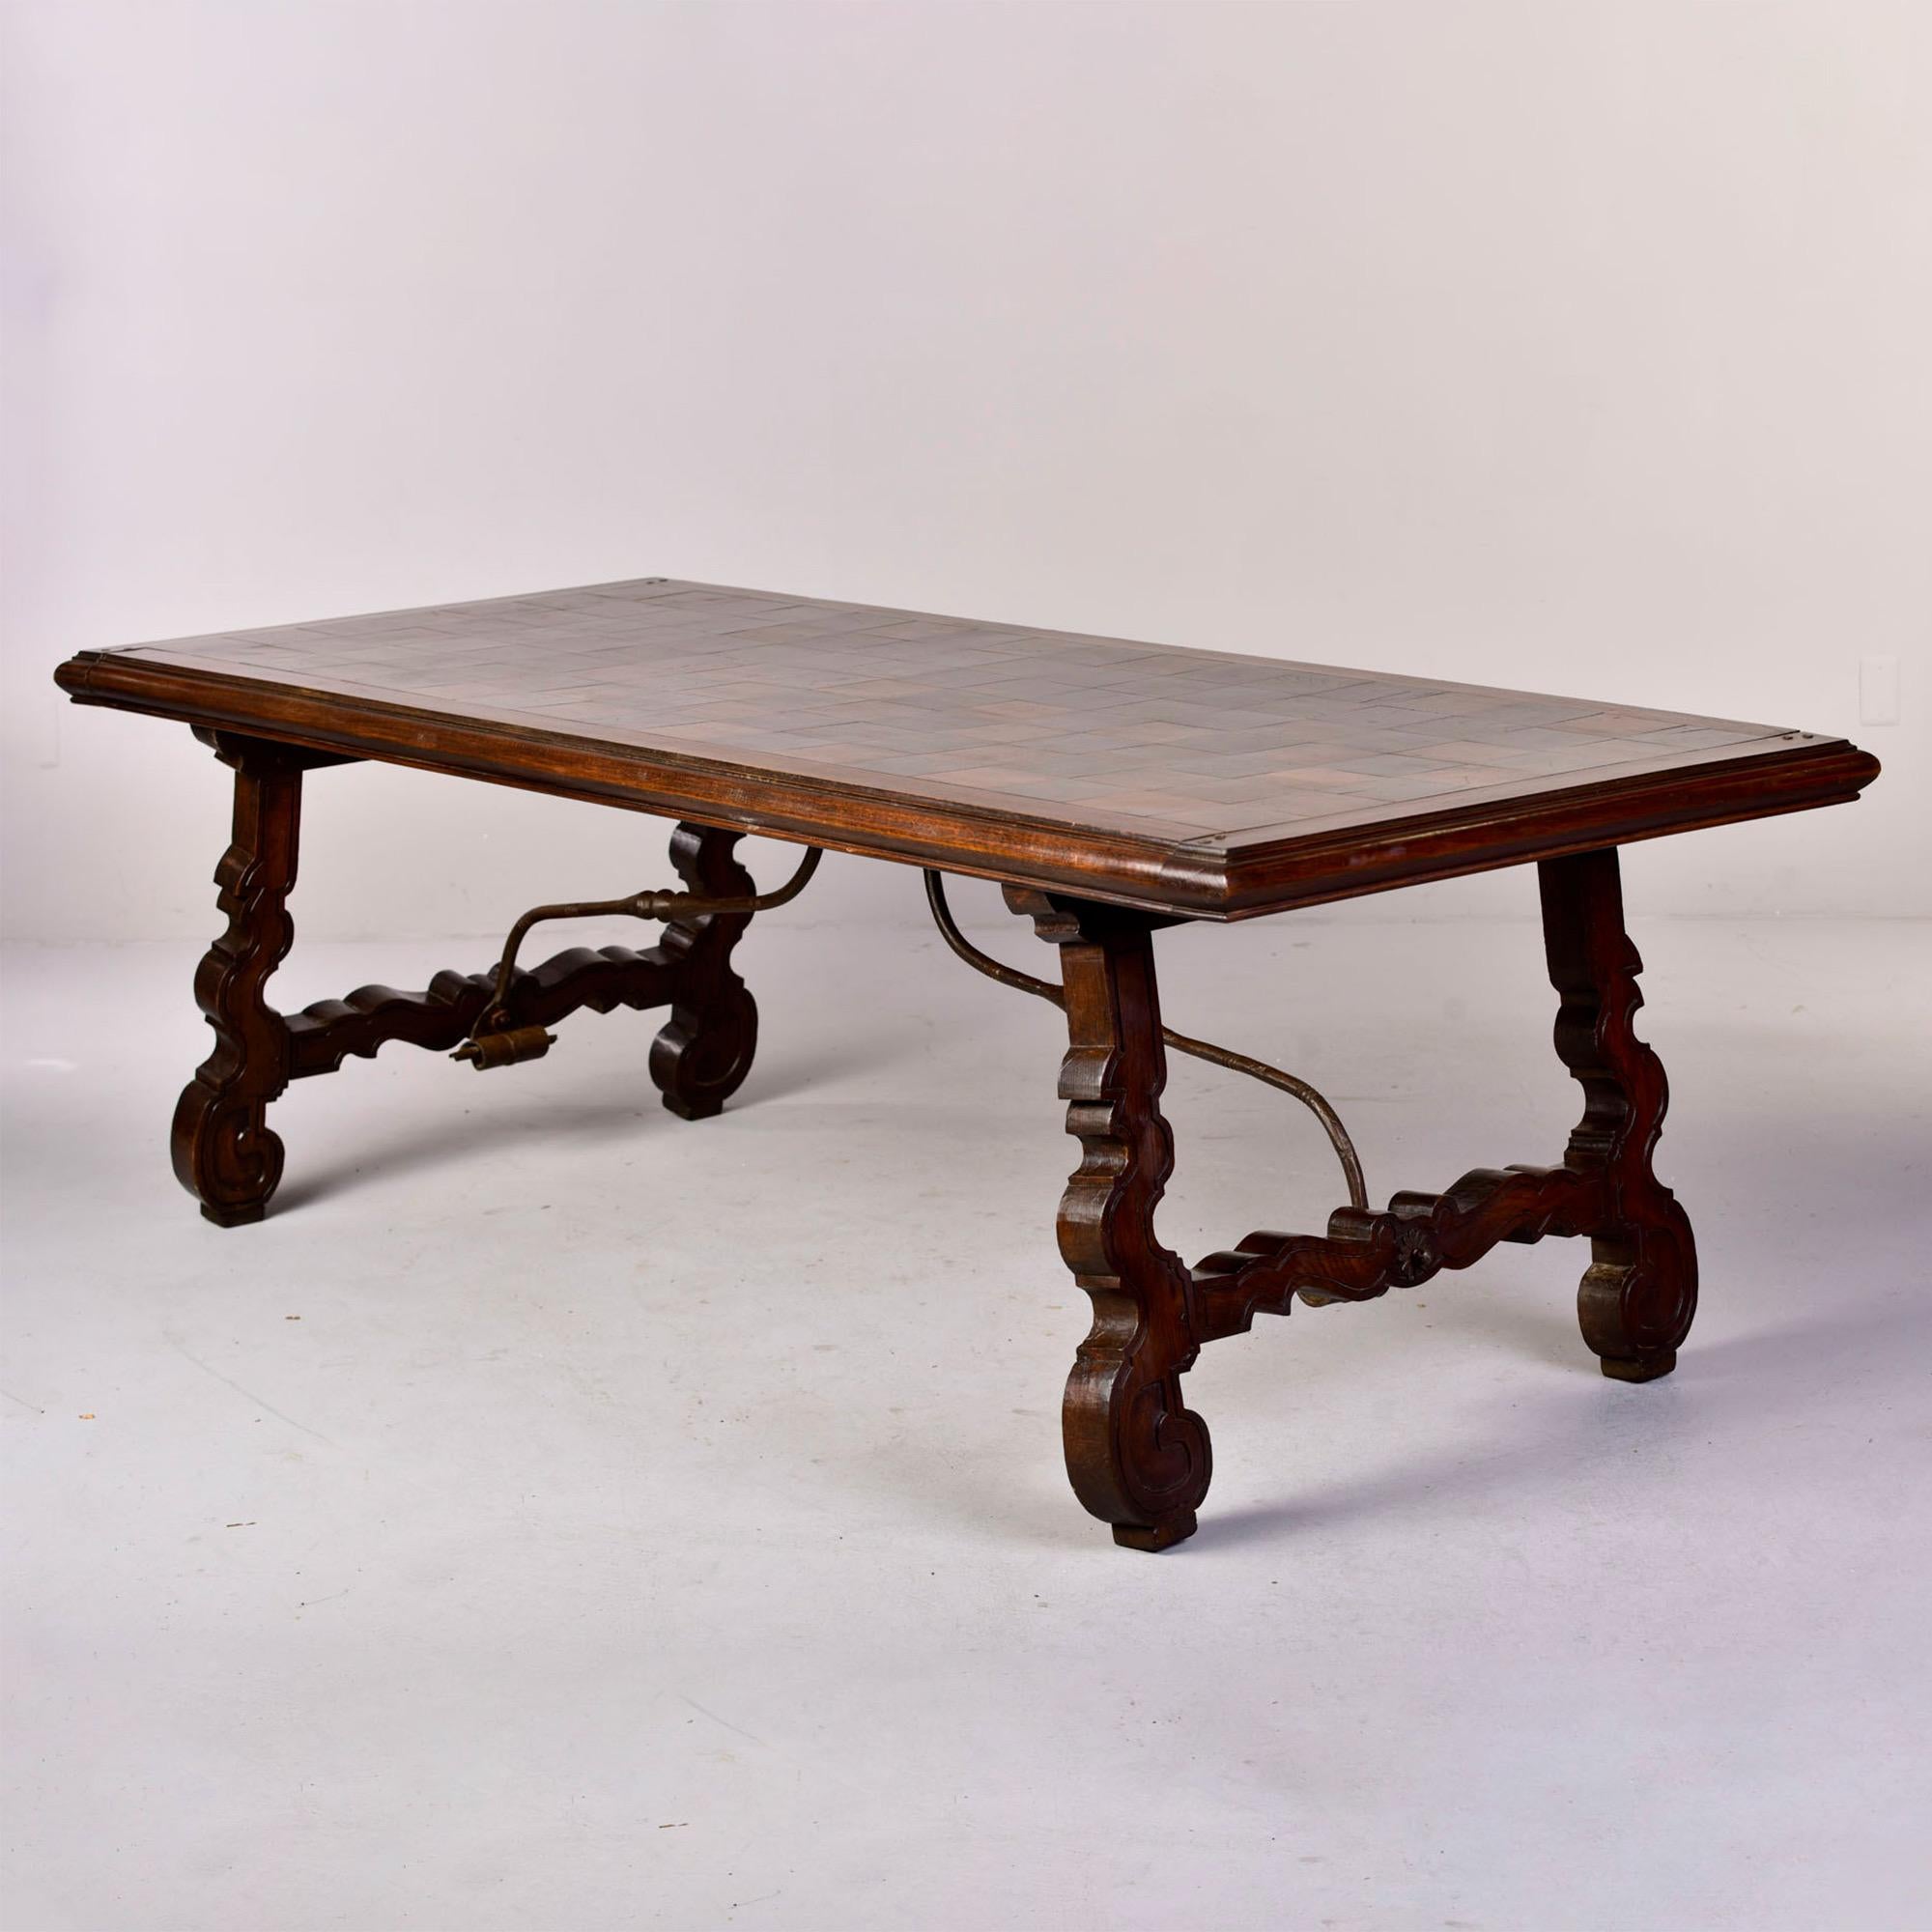 Großer Tisch aus spanischem Nussbaumholz um 1840 mit Intarsien auf der Platte, geschnitzten Beinen und einer eisernen Bahre. Unbekannter Hersteller. 

Höhe der Schürze: 27,5